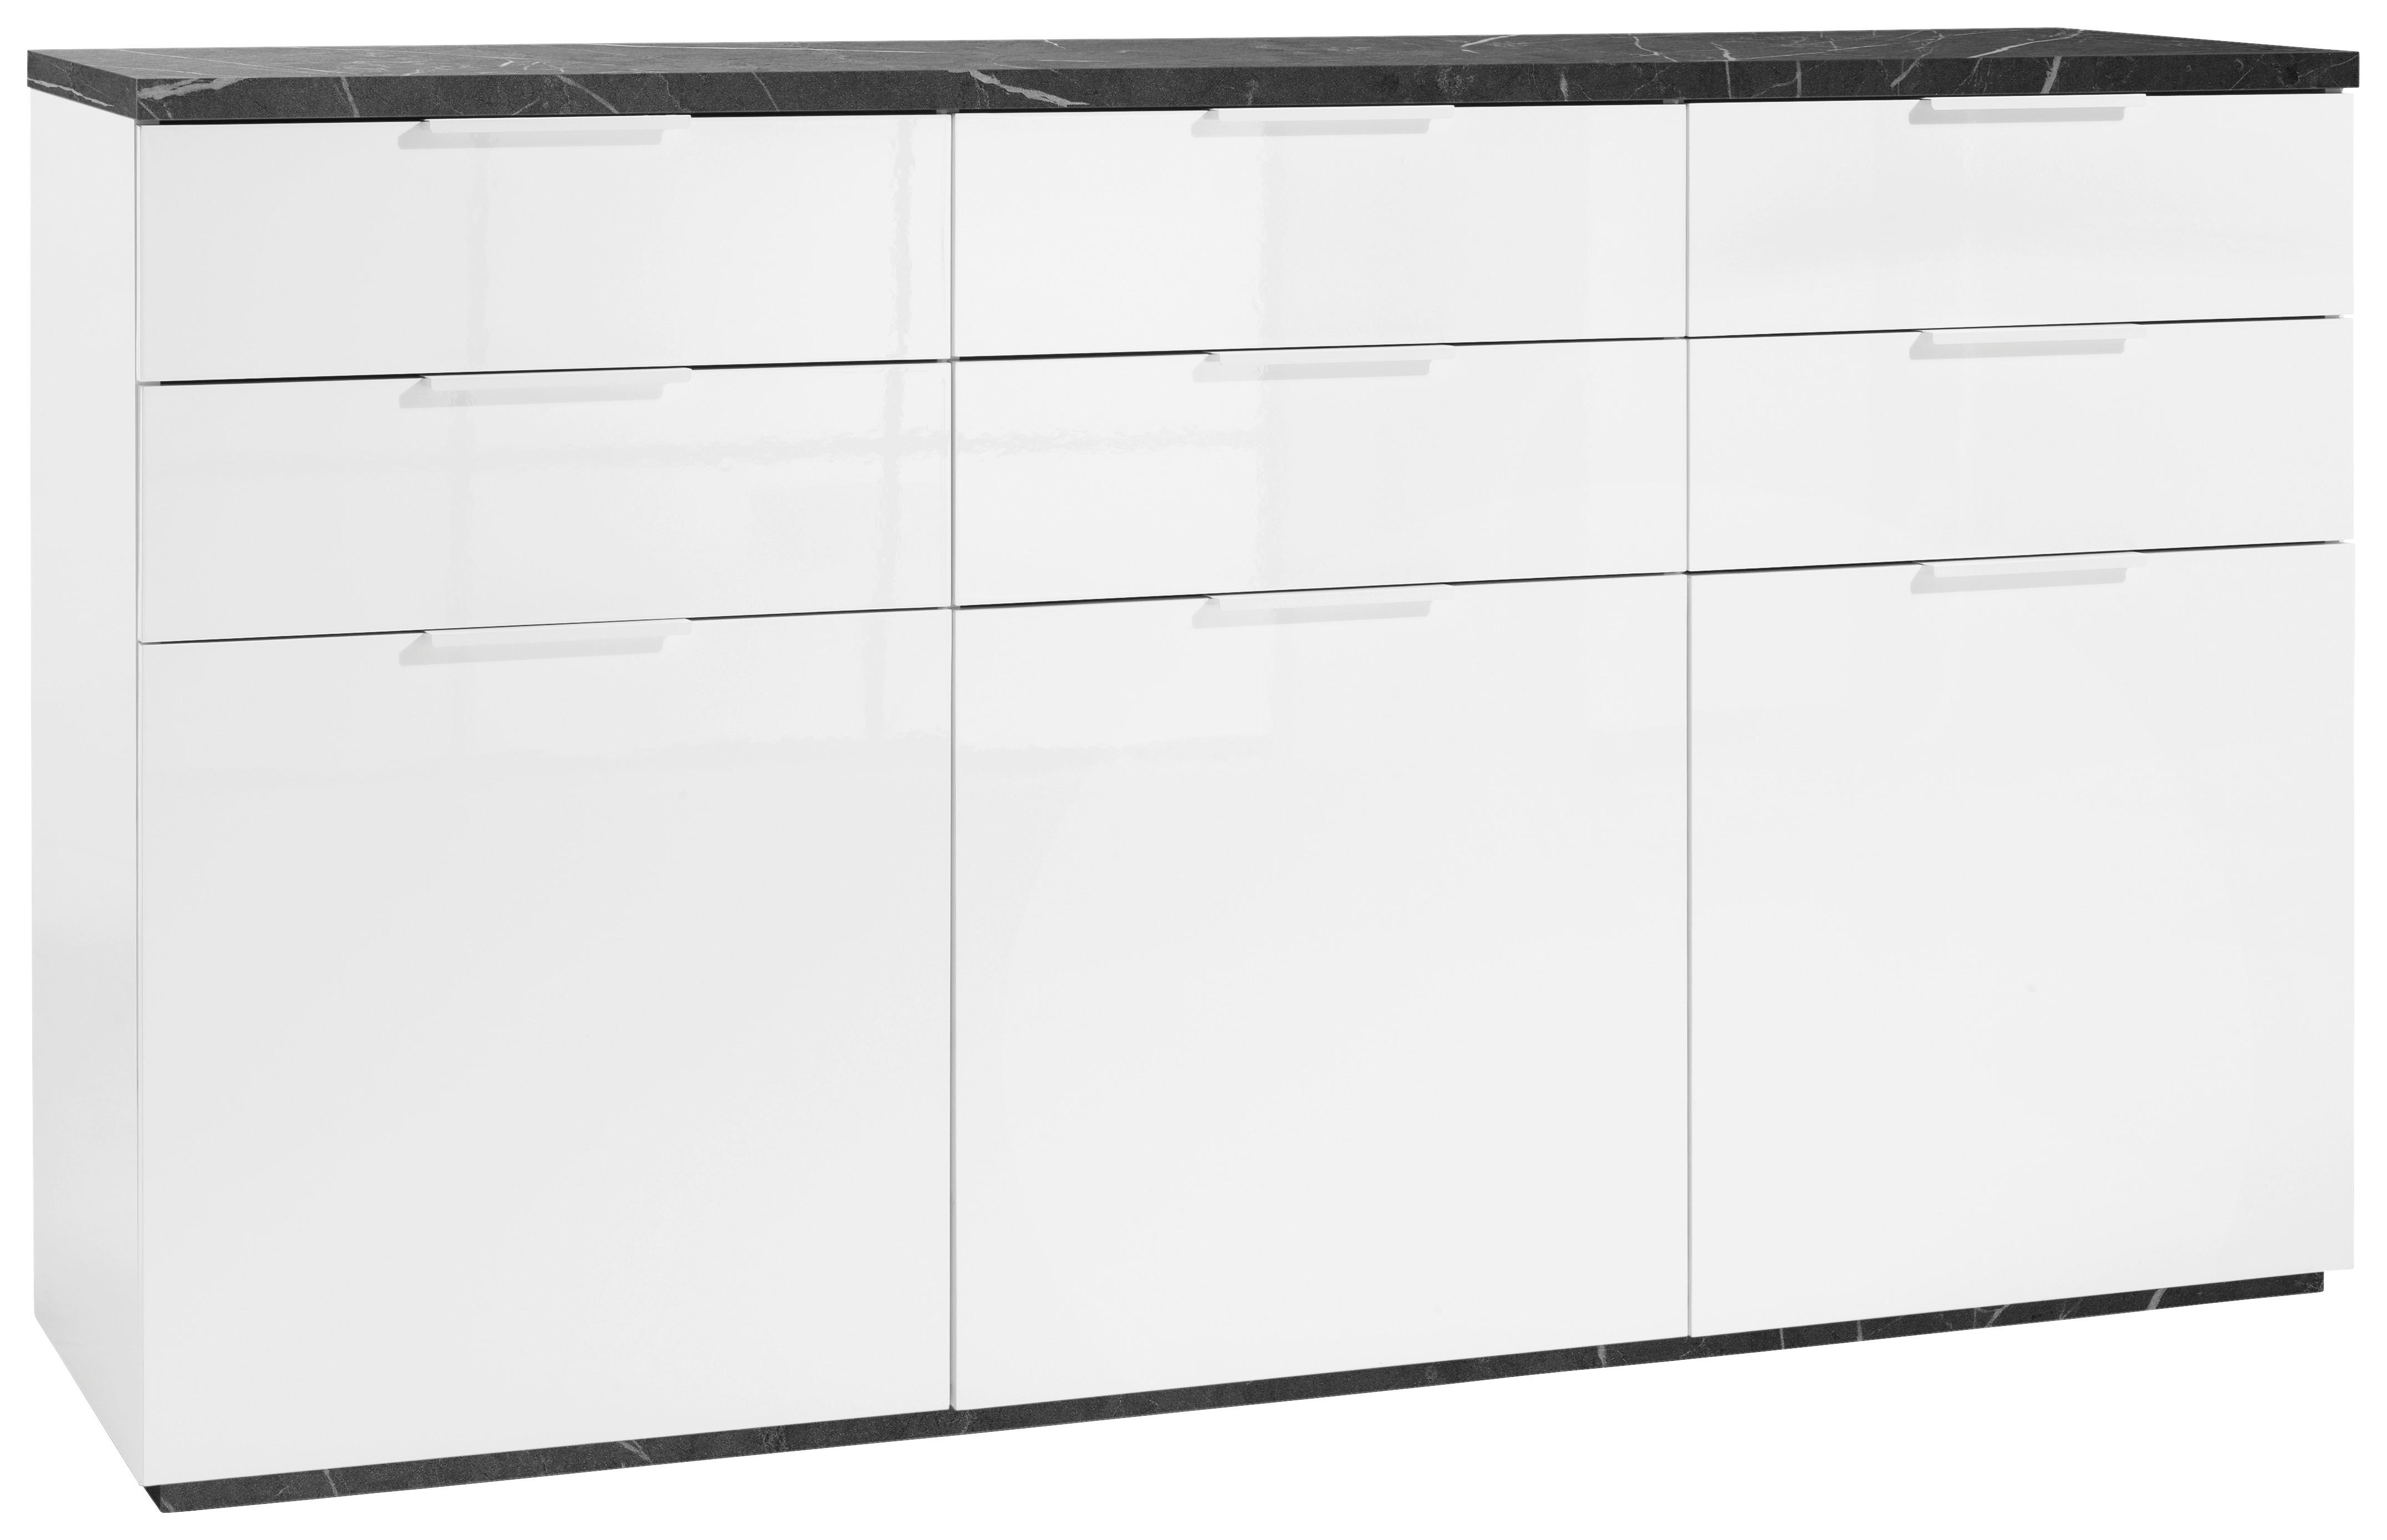 Sideboard in Anthrazit/Weiß - Weiss/Anthrazit, Modern, Holzwerkstoff/Metall (180/102/50cm) - Premium Living